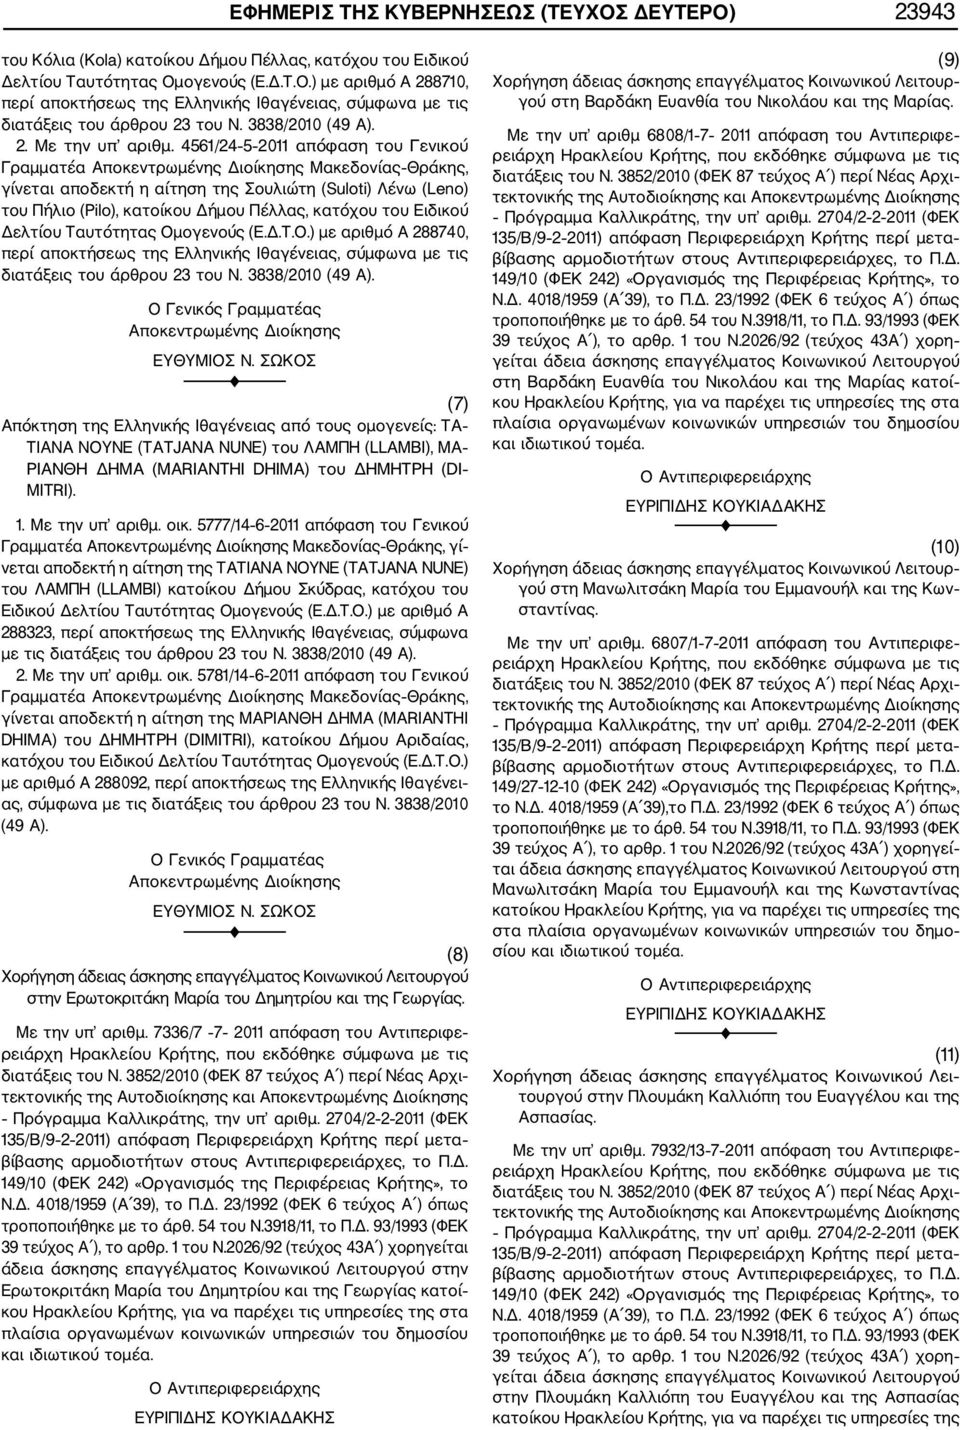 4561/24 5 2011 απόφαση του Γενικού Γραμματέα Αποκεντρωμένης Διοίκησης Μακεδονίας Θράκης, γίνεται αποδεκτή η αίτηση της Σουλιώτη (Suloti) Λένω (Leno) του Πήλιο (Pilo), κατοίκου Δήμου Πέλλας, κατόχου